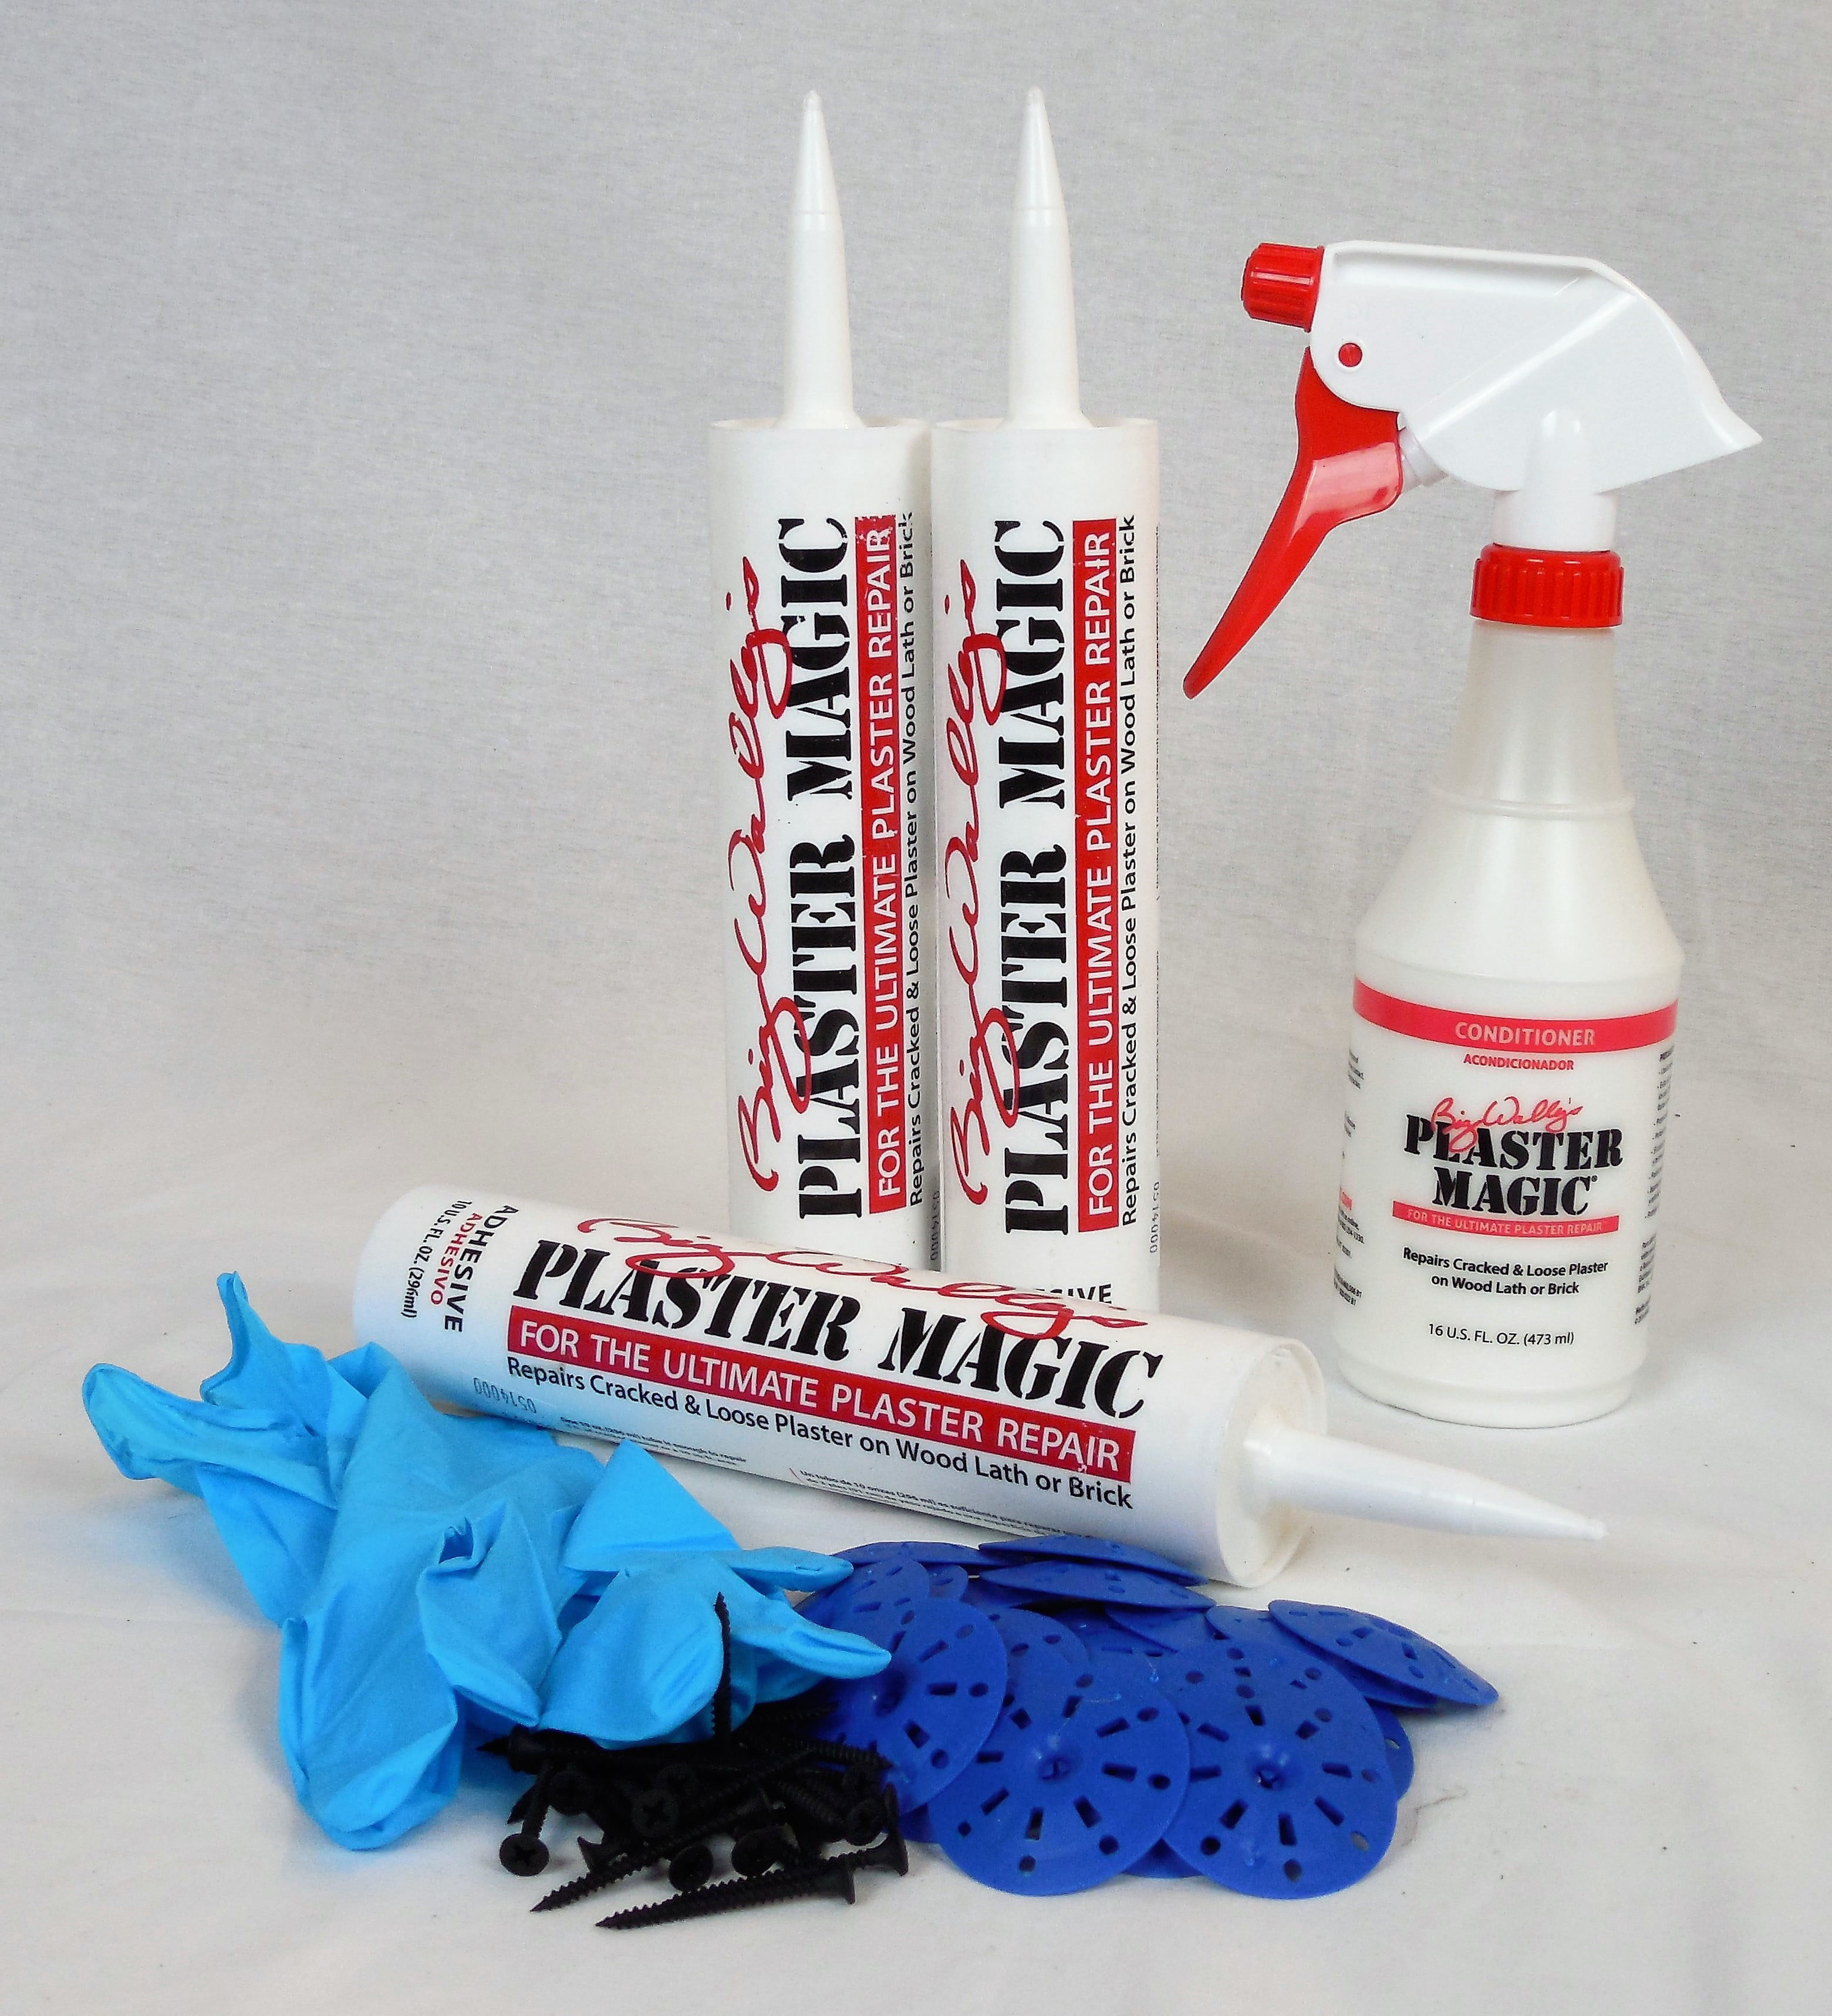 Plaster Magic Plaster Repair Kit Homeowners Pack